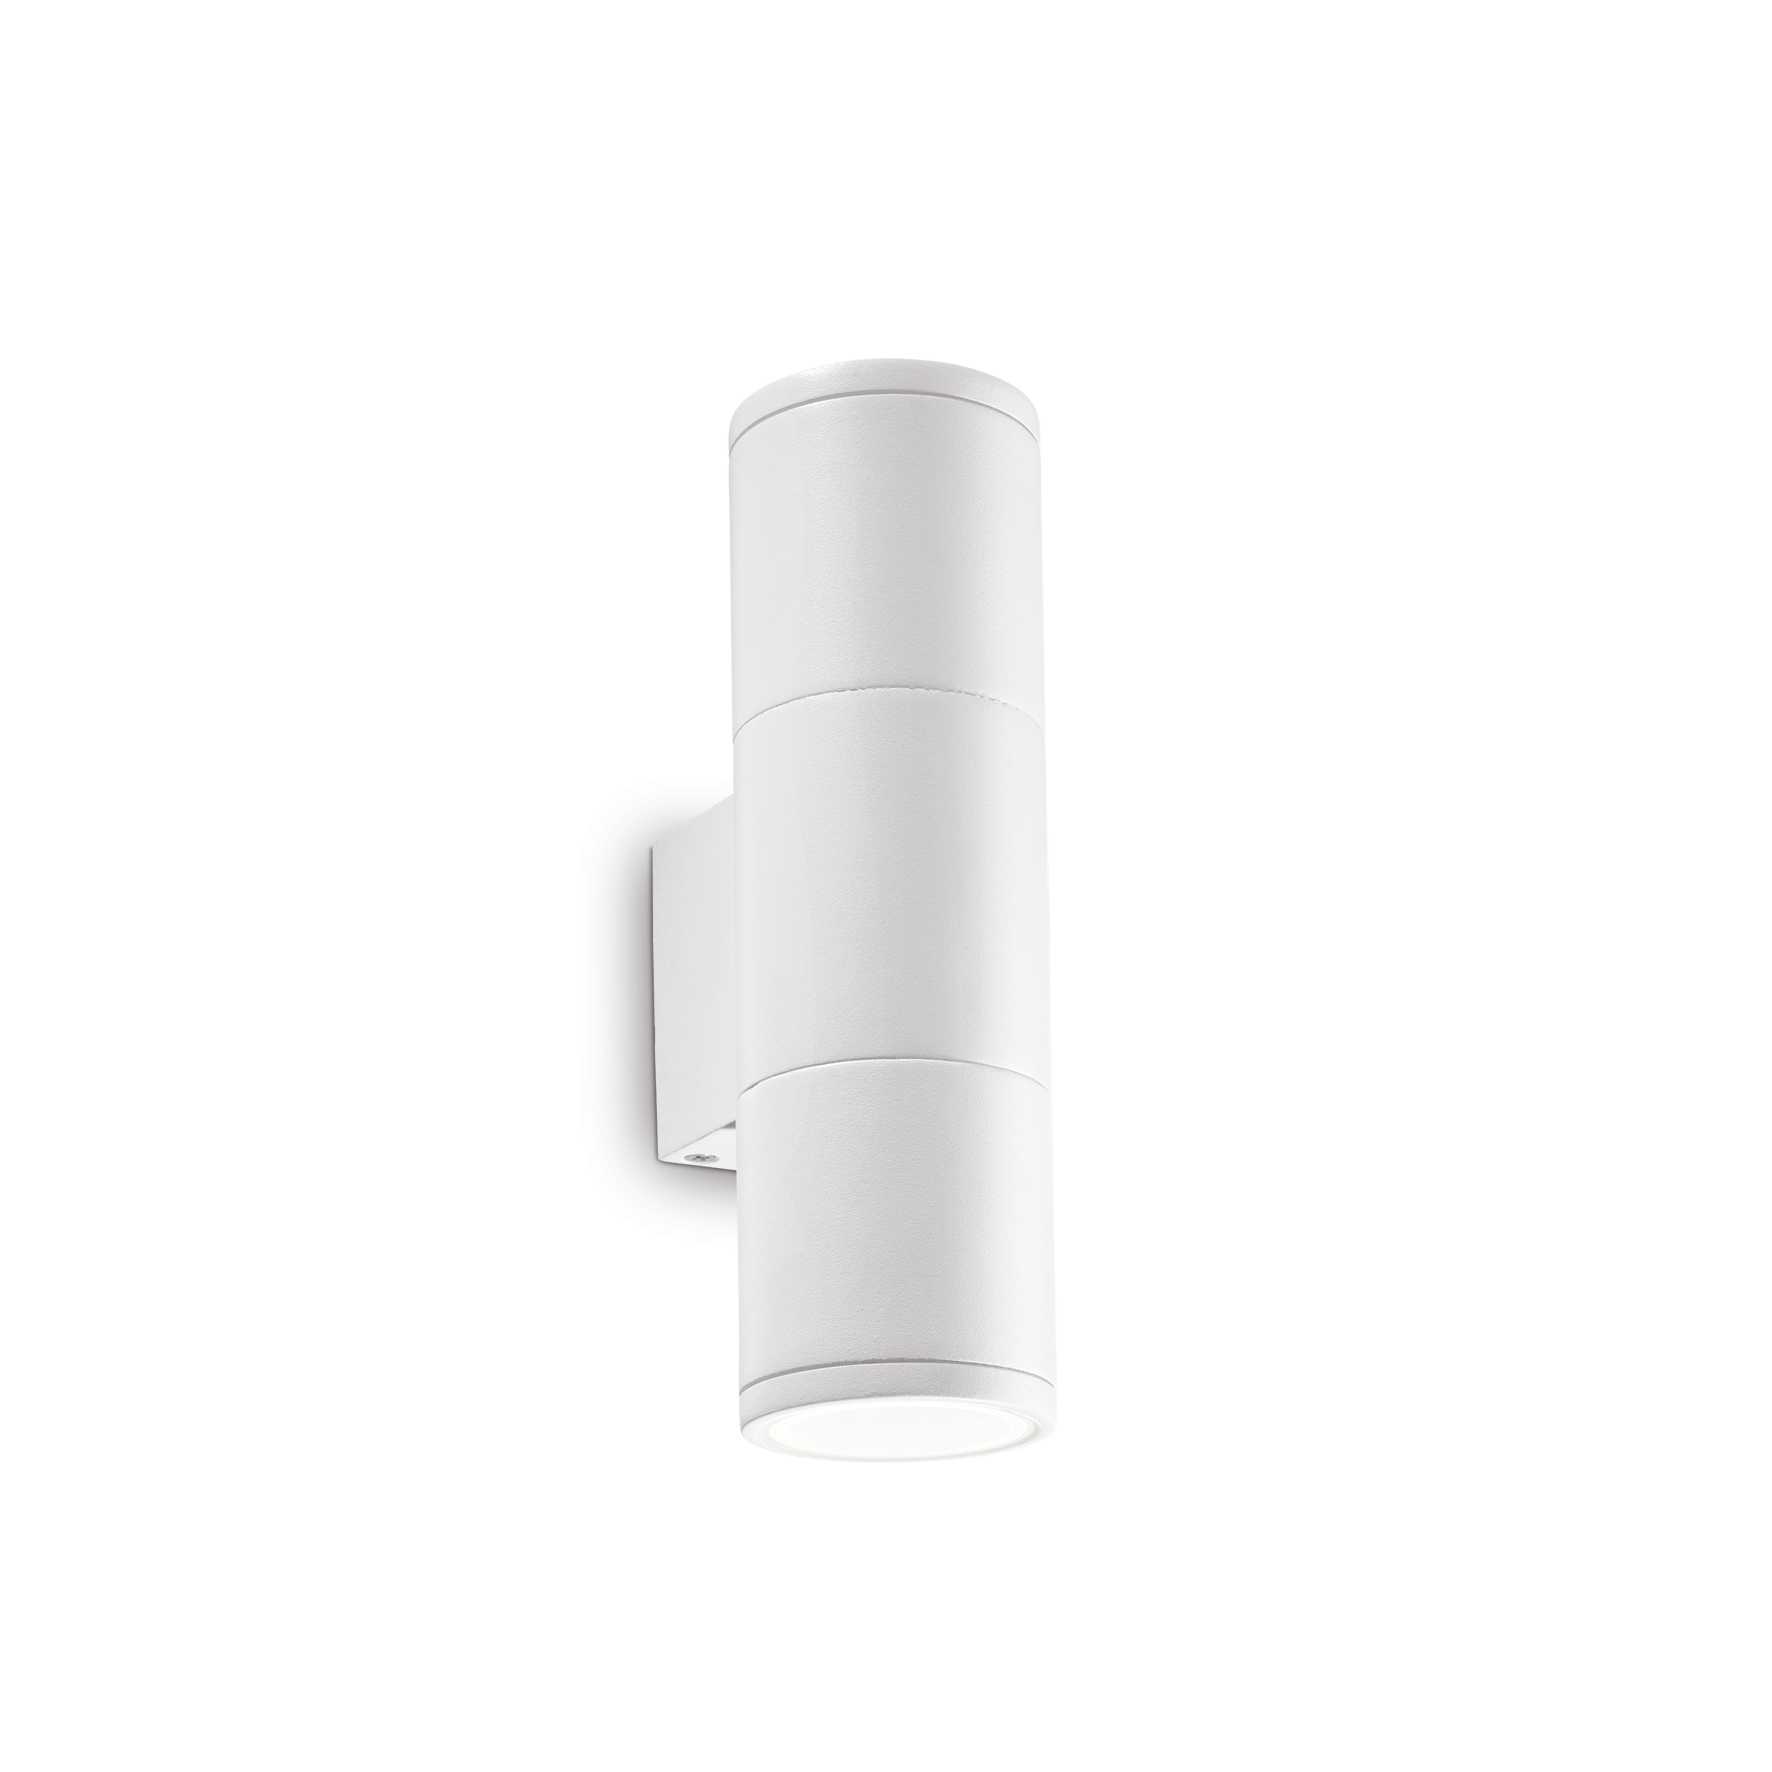 AD hotelska oprema Vanjska zidna lampa Gun ap2 mala- Bijele boje slika proizvoda